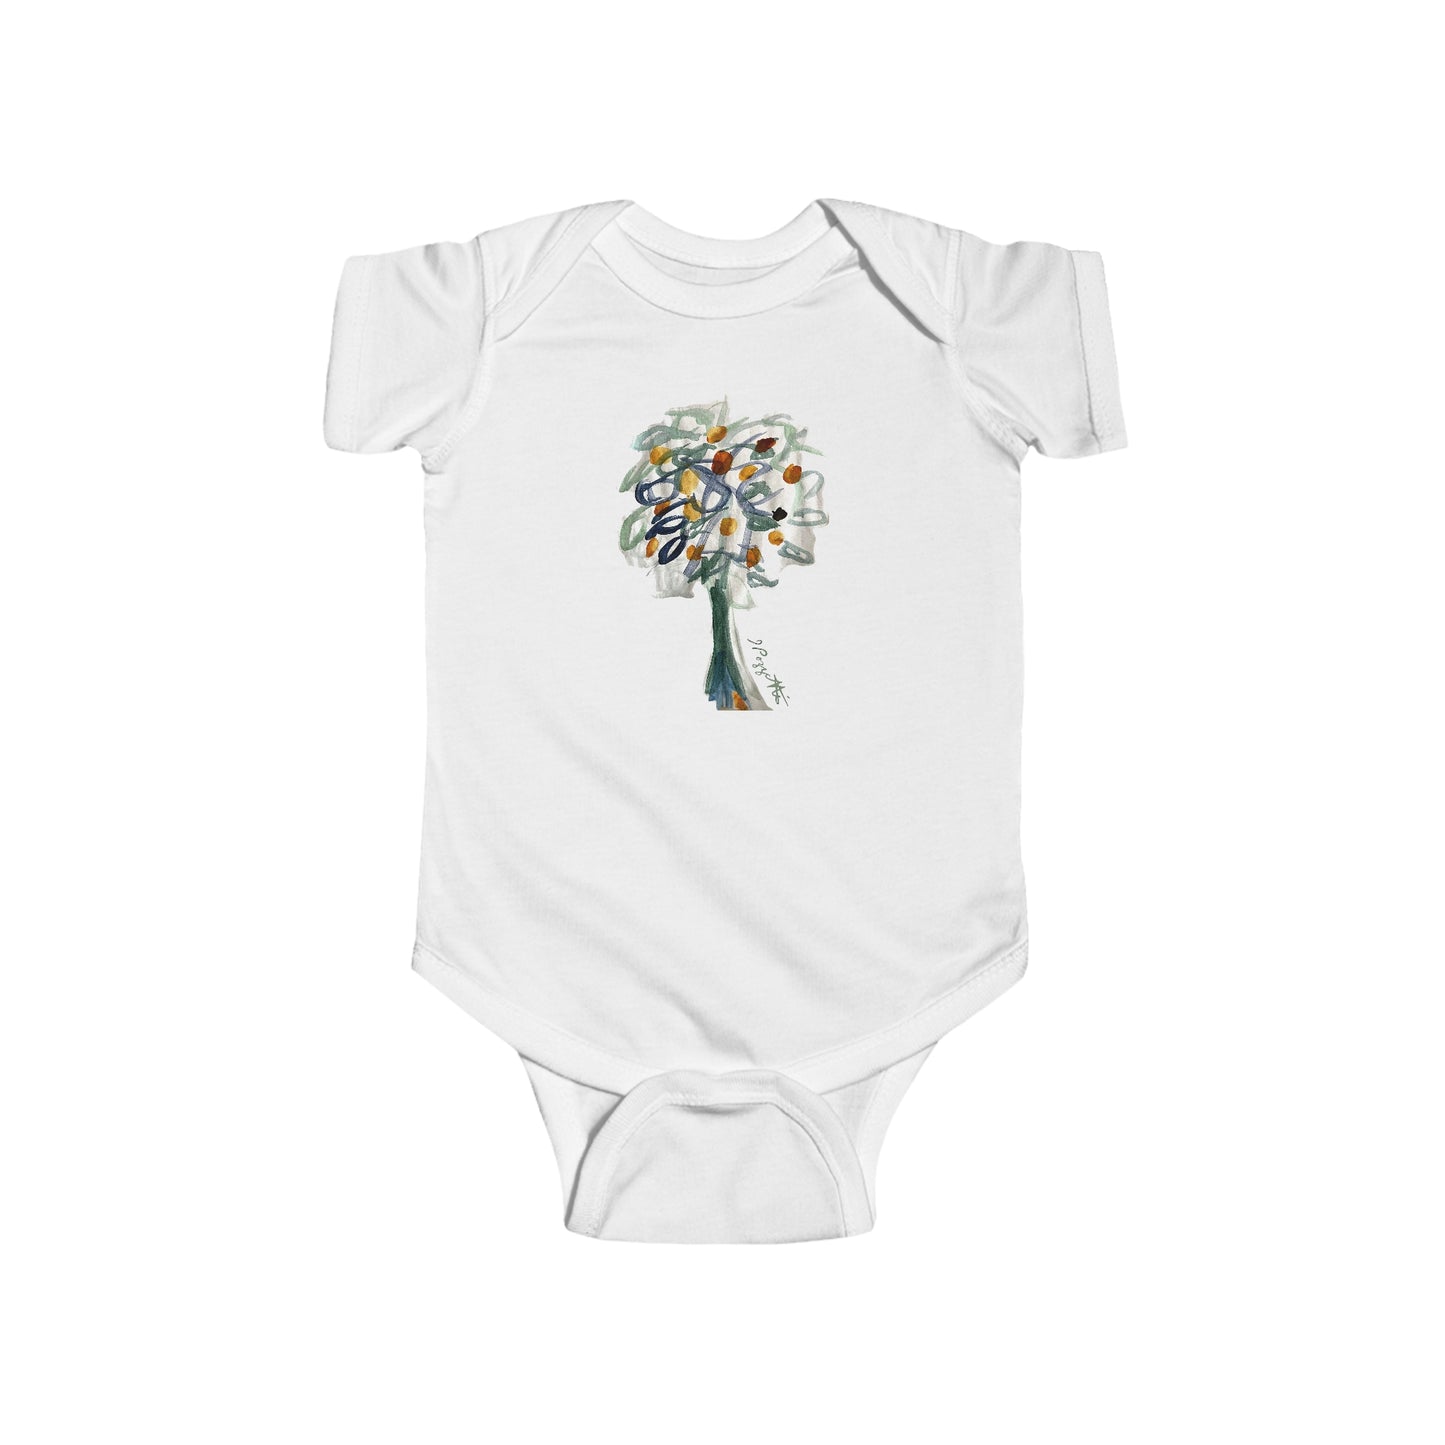 Baby Onesie with Tree Design